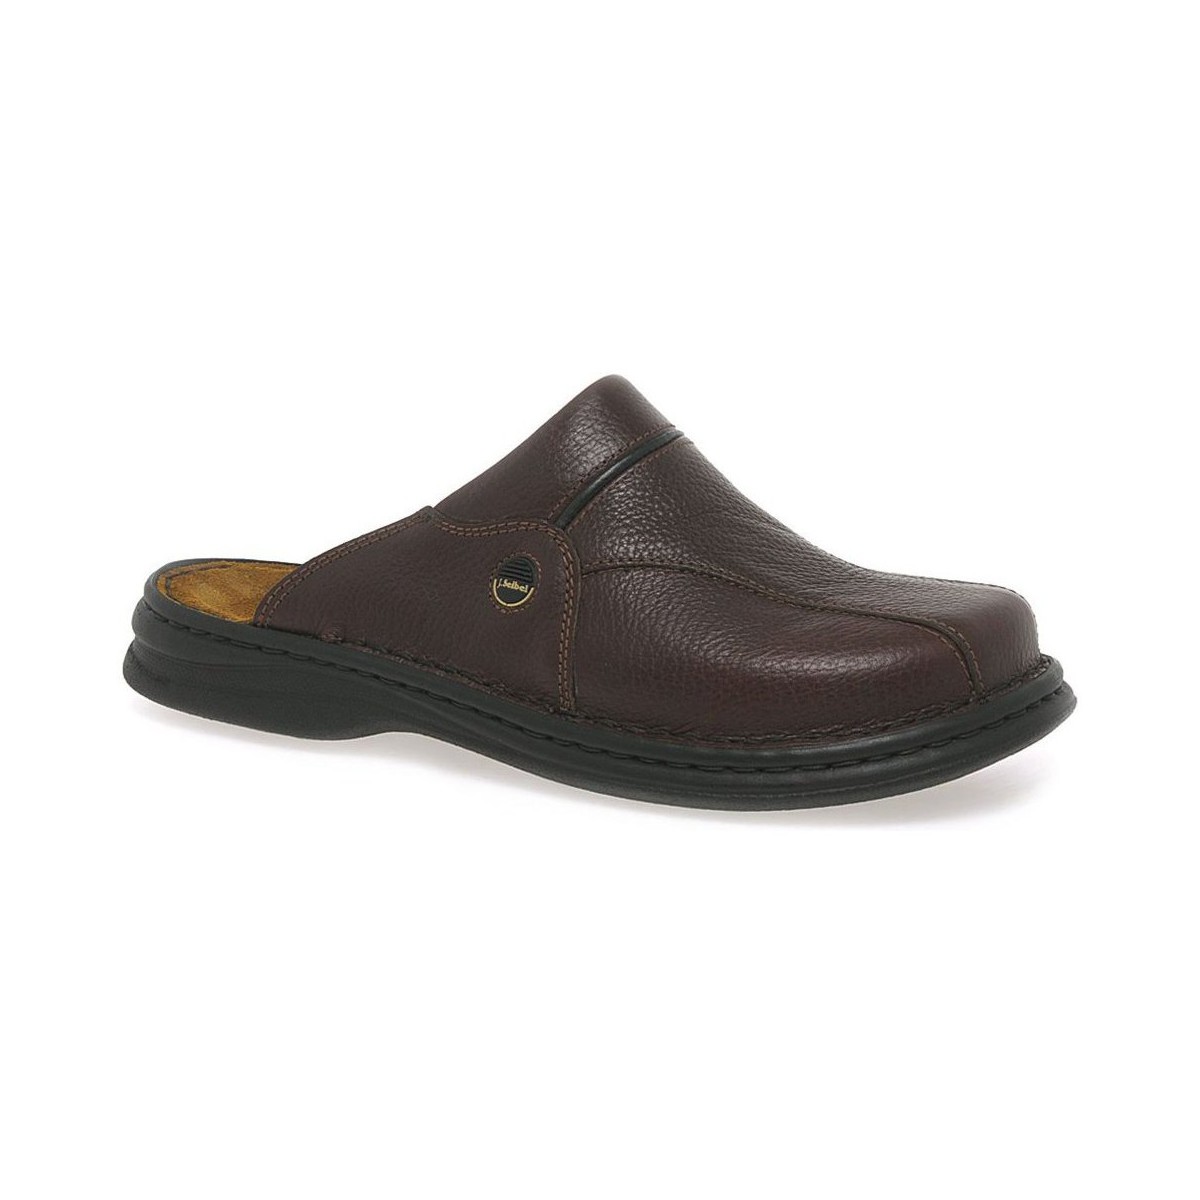 Shoes Men Sandals Josef Seibel Klaus Classic Leather Mens Mules Brown